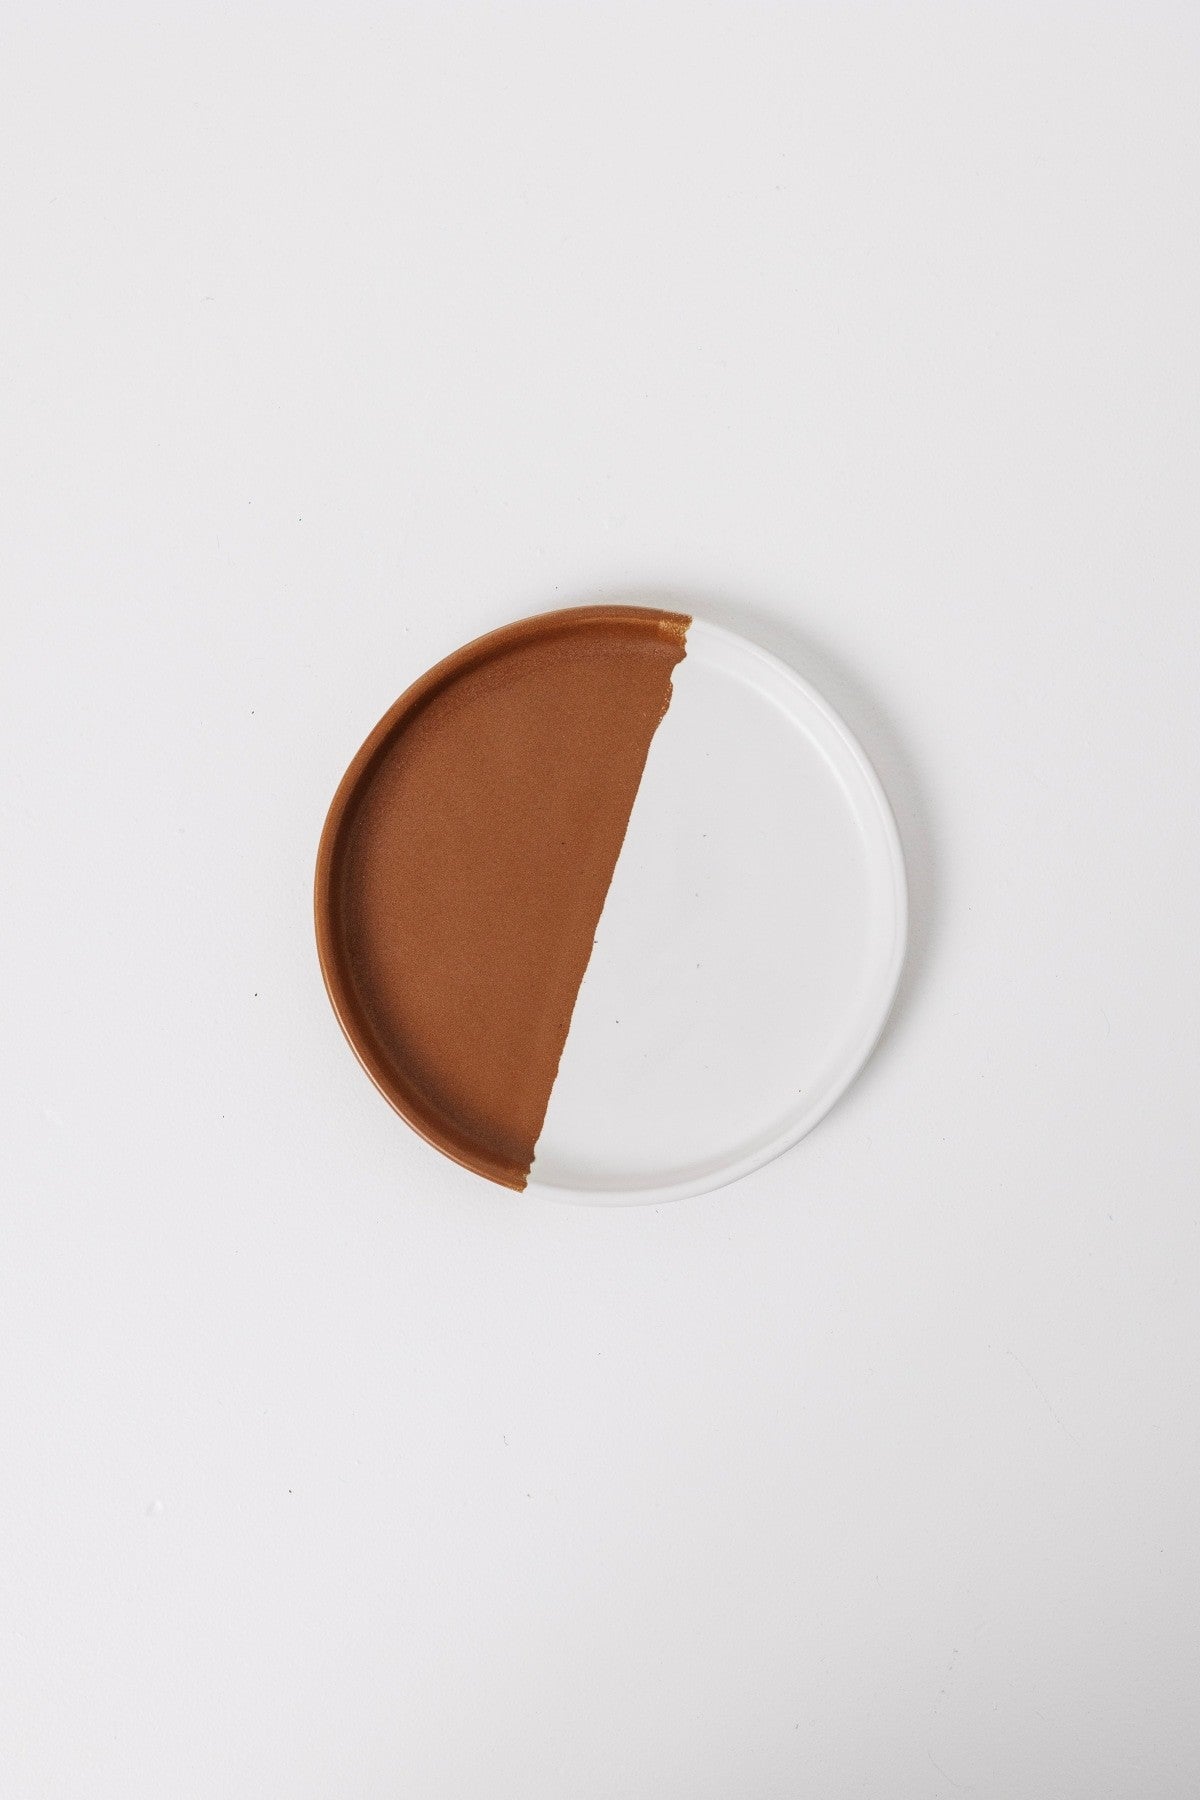 Waylon Appetizer Plate - Brown/White - Set of 6